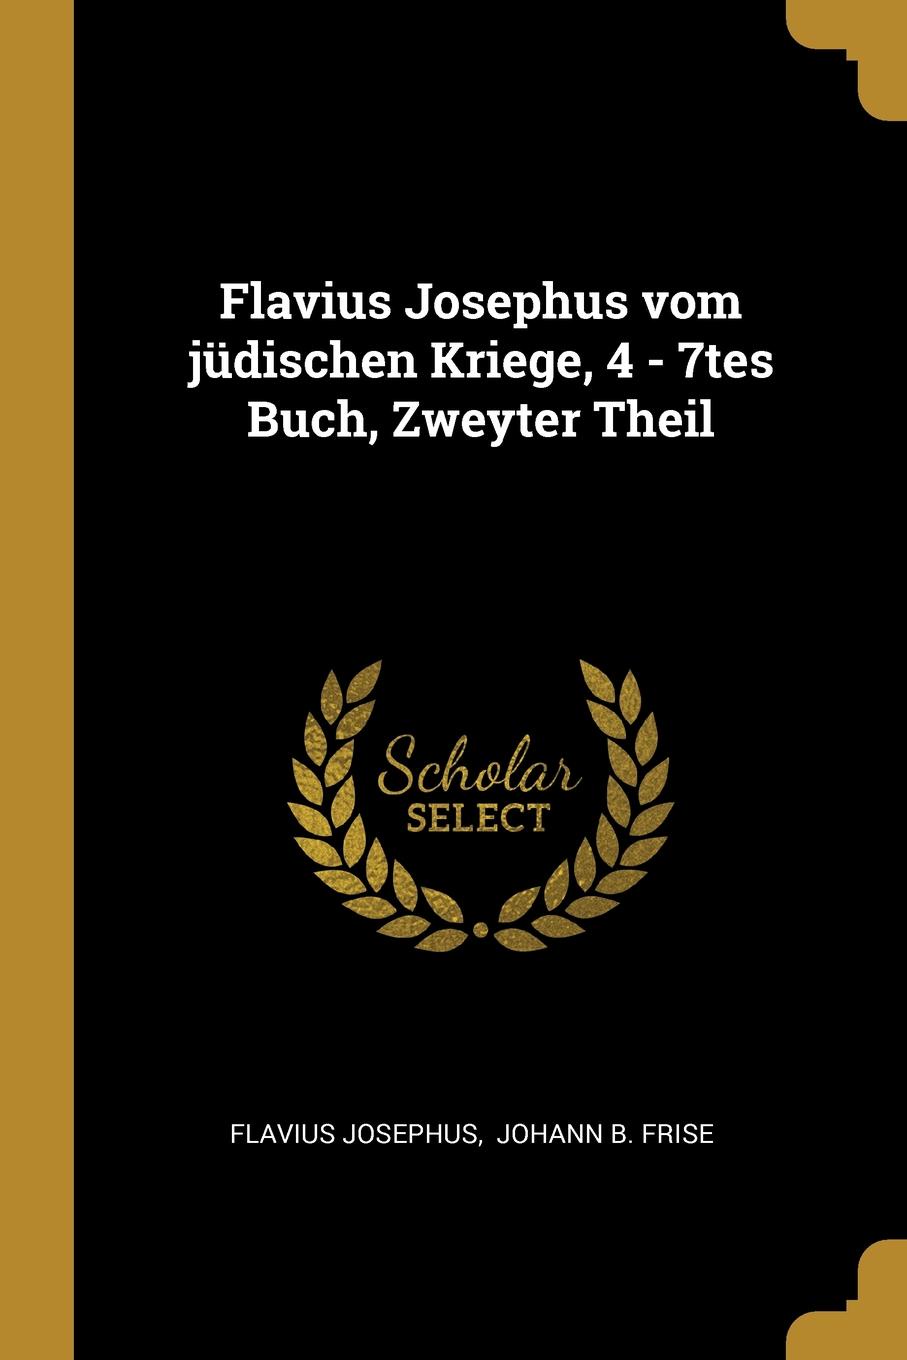 Flavius Josephus vom judischen Kriege, 4 - 7tes Buch, Zweyter Theil